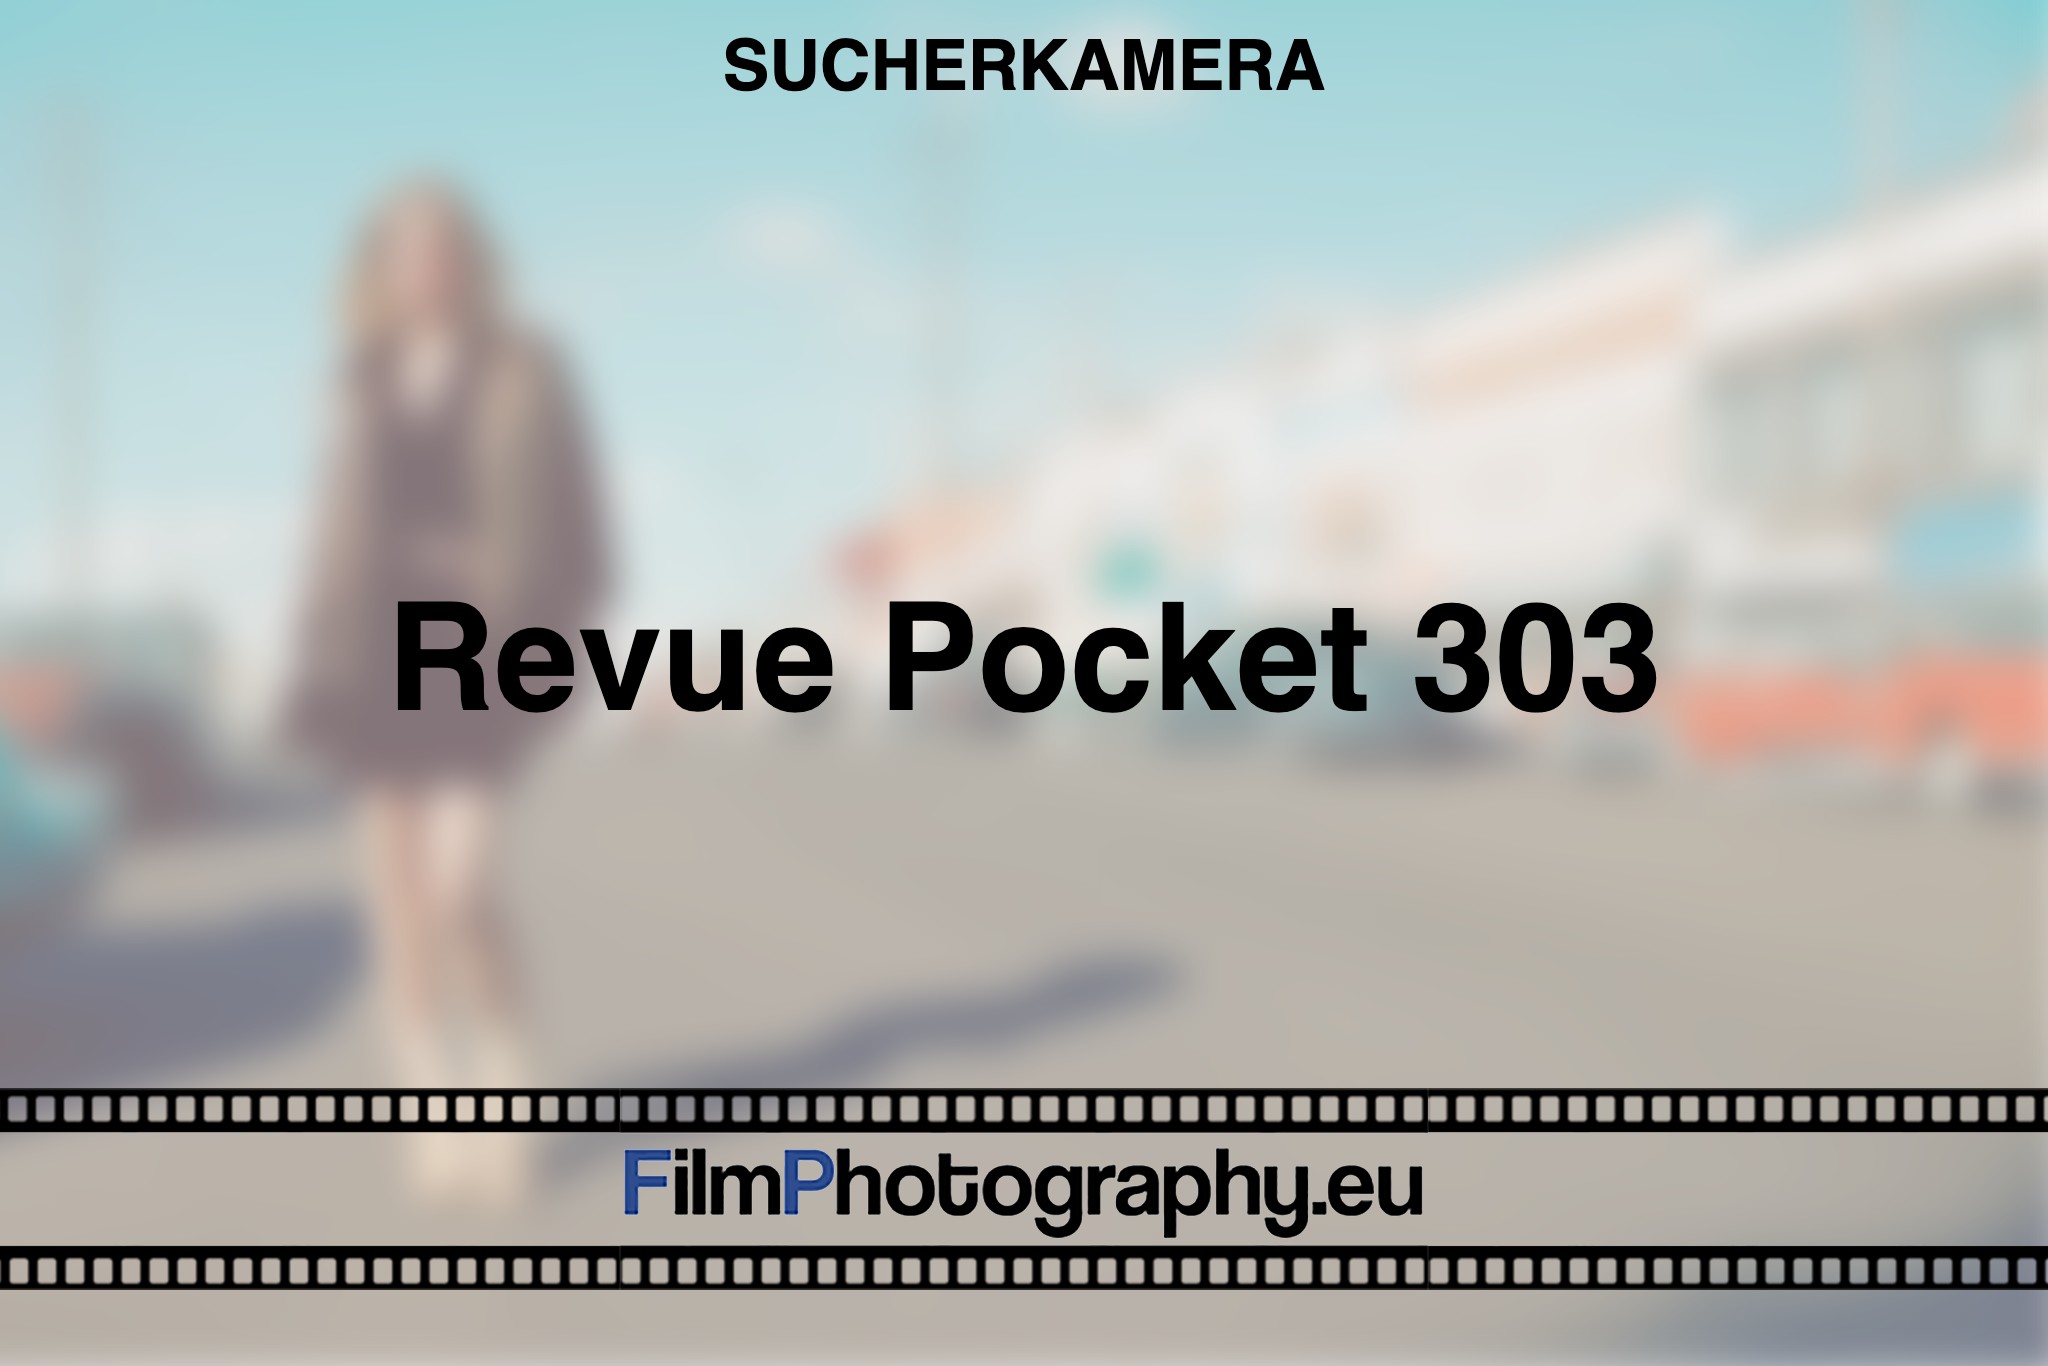 revue-pocket-303-sucherkamera-bnv